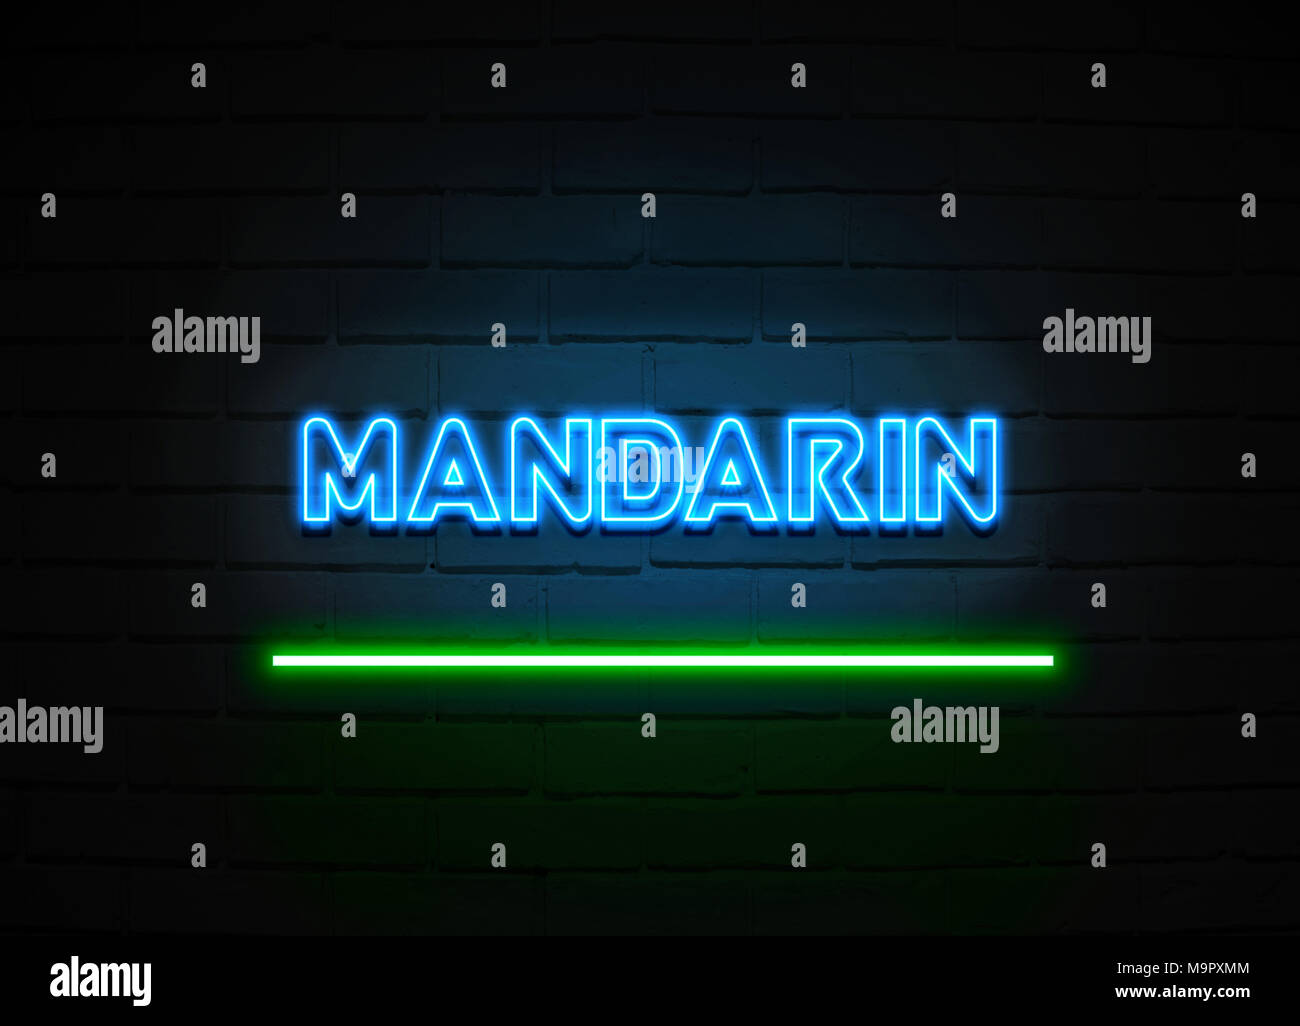 Mandarin Leuchtreklame - glühende Leuchtreklame auf brickwall Wand - 3D-Royalty Free Stock Illustration dargestellt. Stockfoto